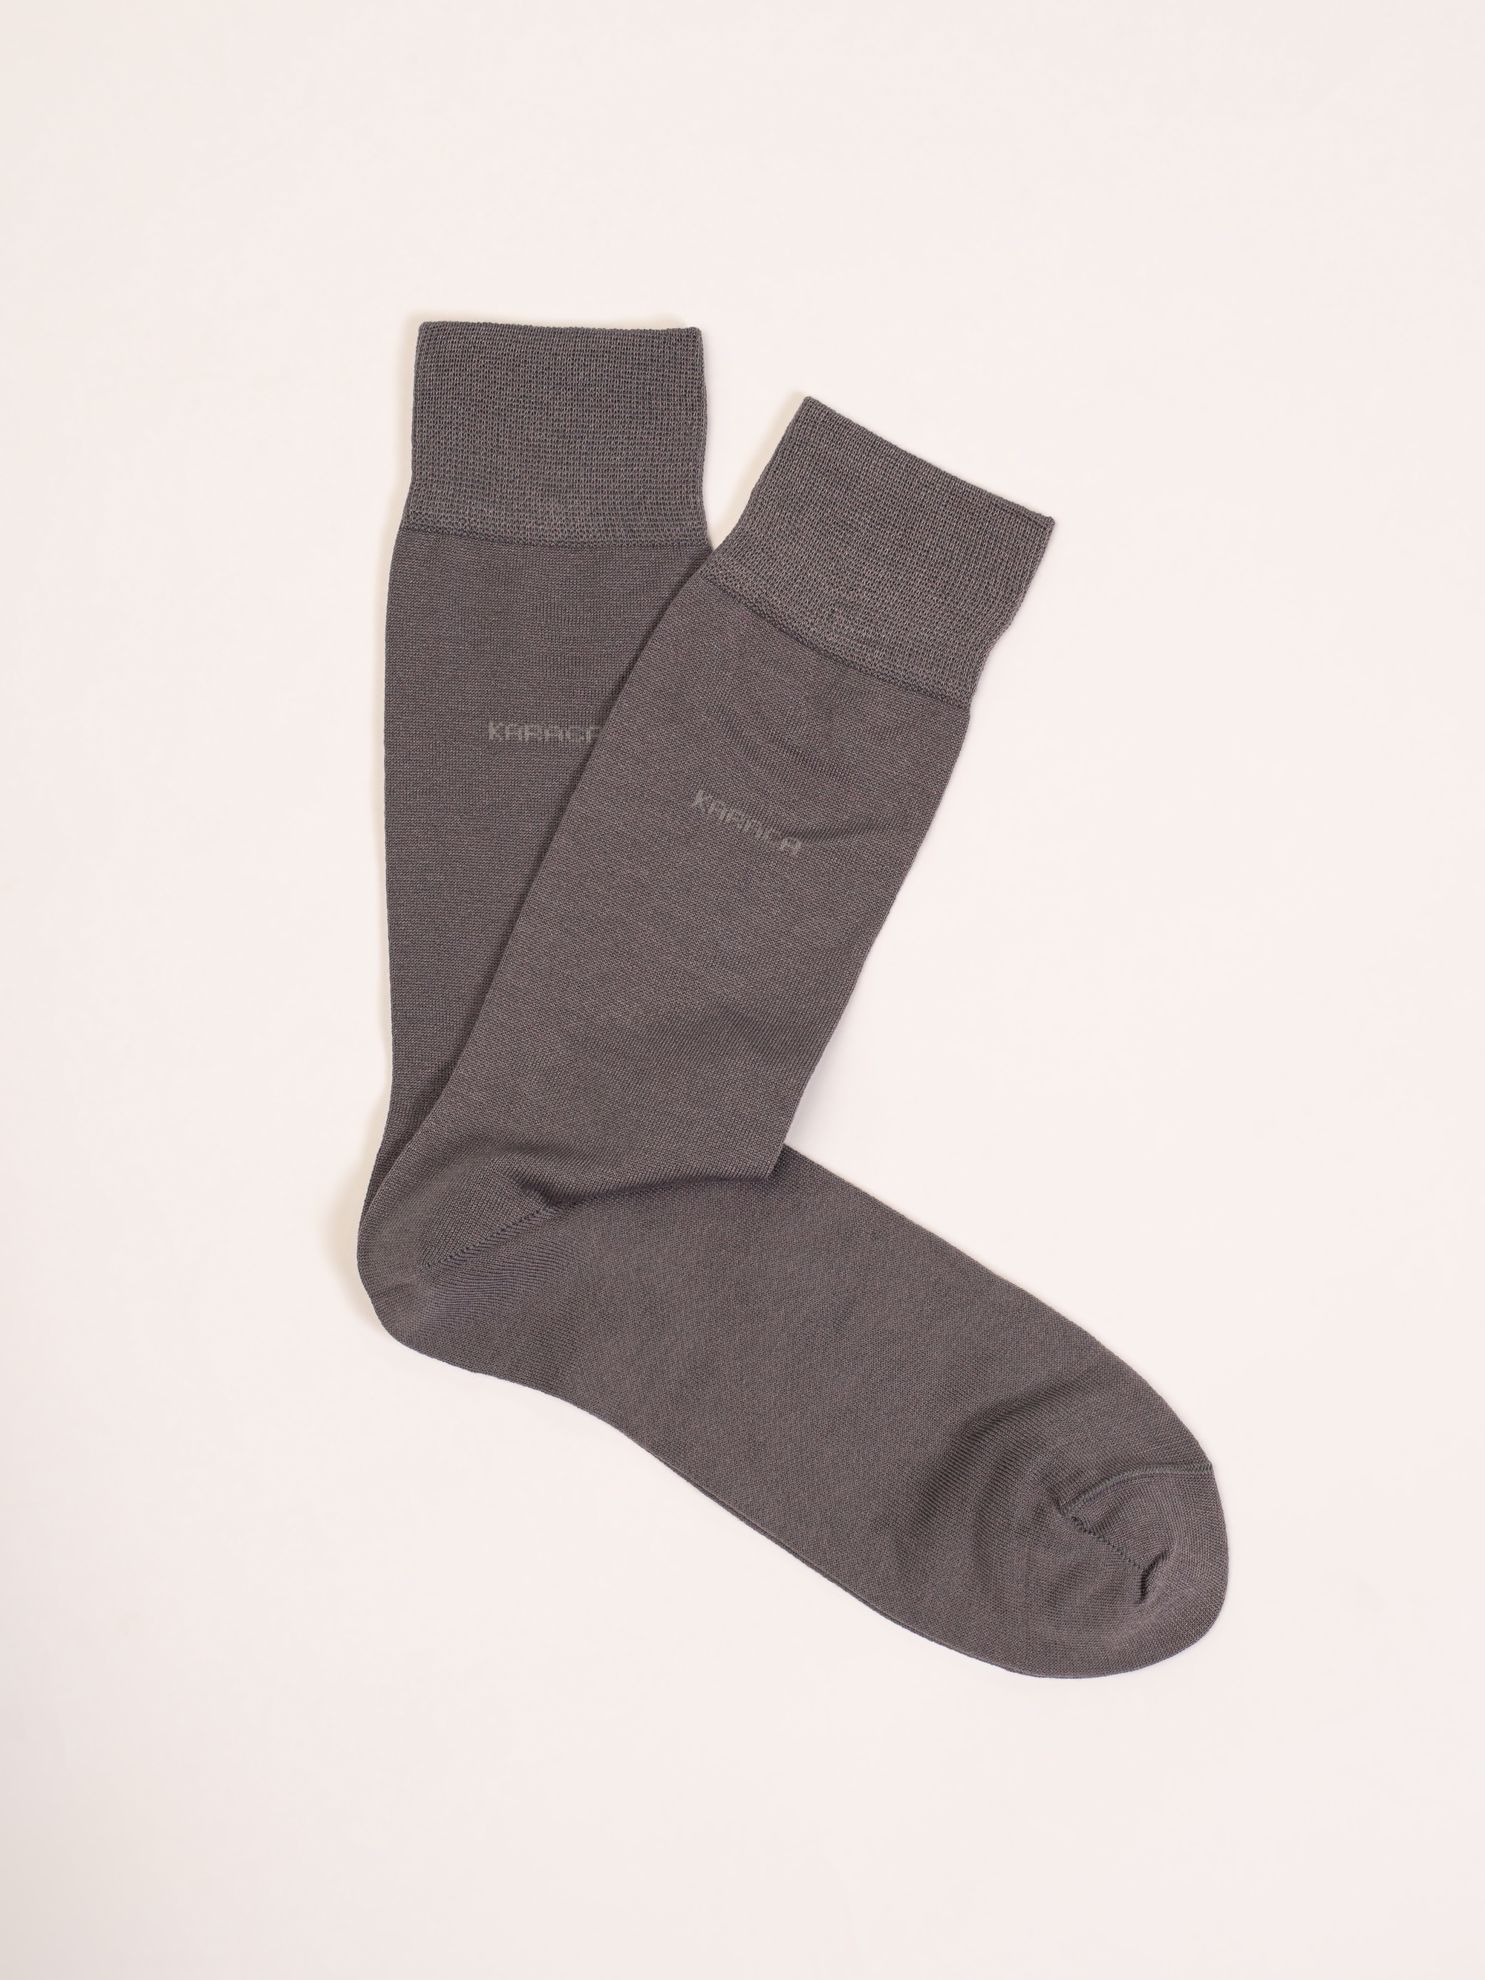 Karaca Erkek Soket Çorap-Gri. ürün görseli